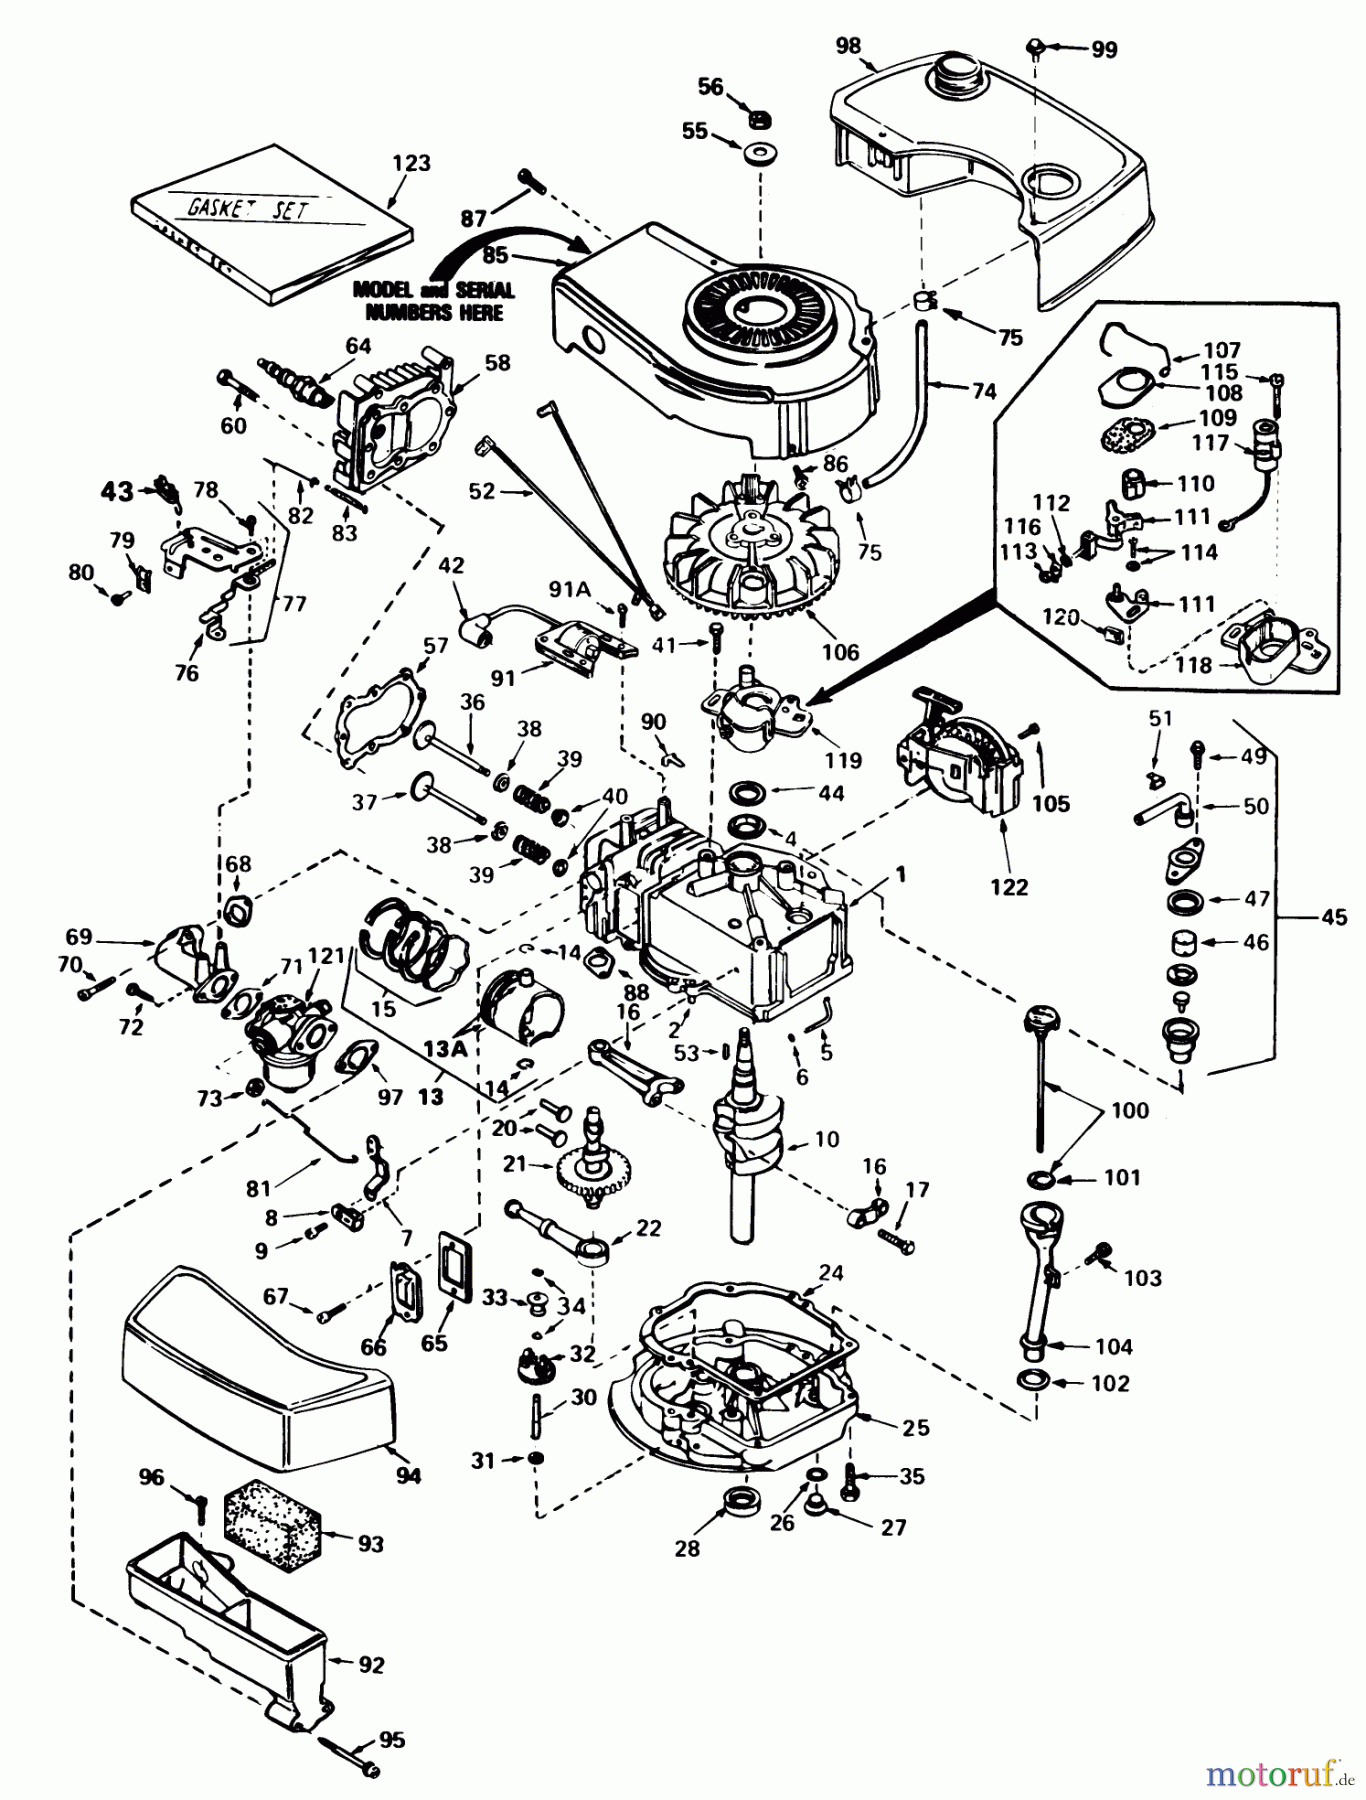  Toro Neu Mowers, Walk-Behind Seite 1 20810 - Toro Lawnmower, 1982 (2000001-2999999) ENGINE TECUMSEH MODEL NO. TNT 100-10076D